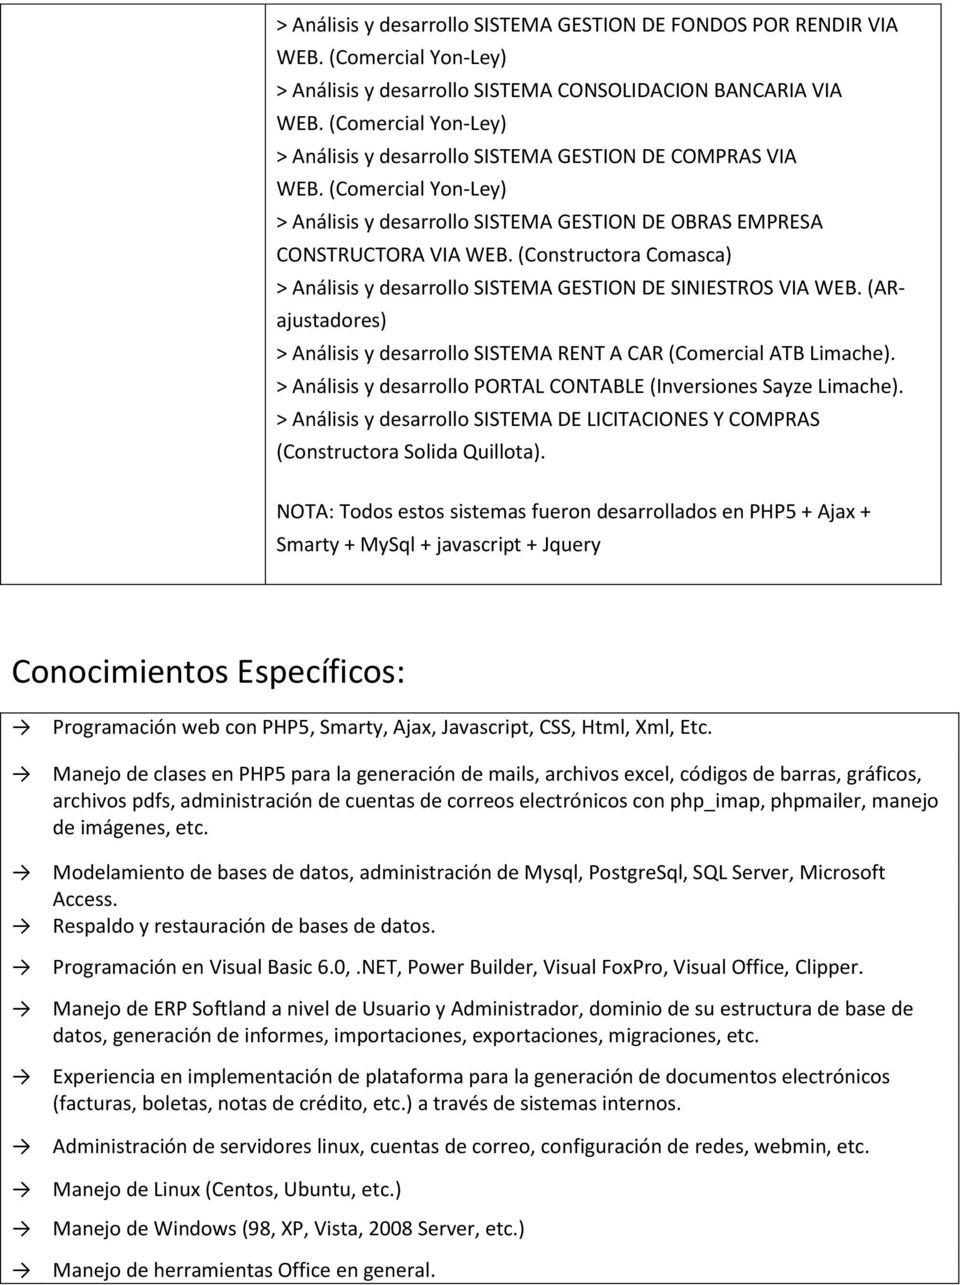 CAR (Comercial ATB Limache). > Análisis y desarrollo PORTAL CONTABLE (Inversiones Sayze Limache). > Análisis y desarrollo SISTEMA DE LICITACIONES Y COMPRAS (Constructora Solida Quillota).